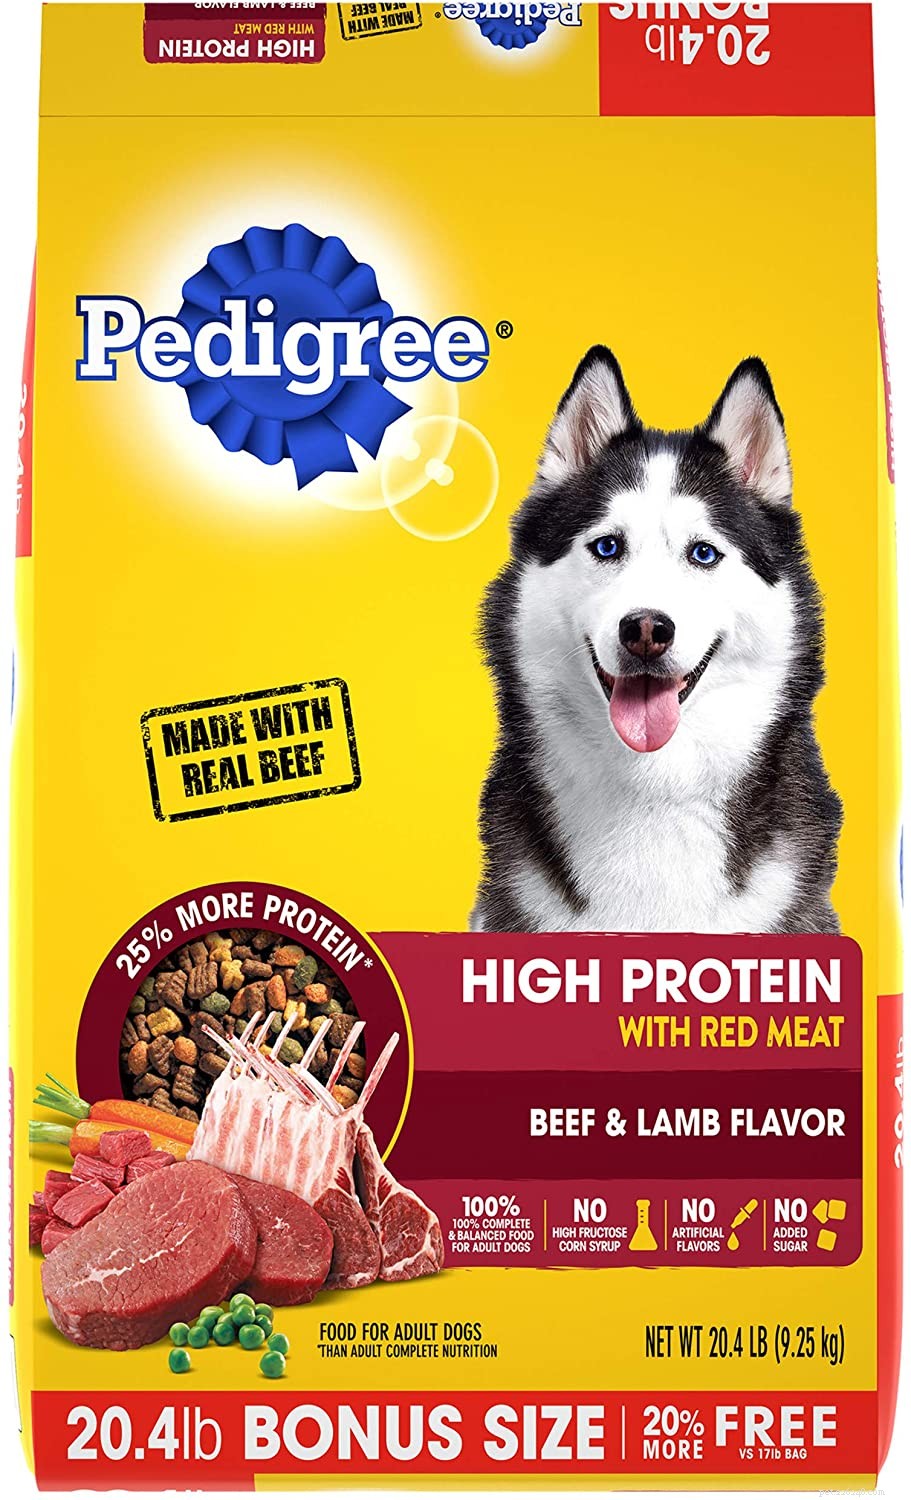 Meilleure protéine pour chiens :choisir la meilleure nourriture et la meilleure santé pour chiens